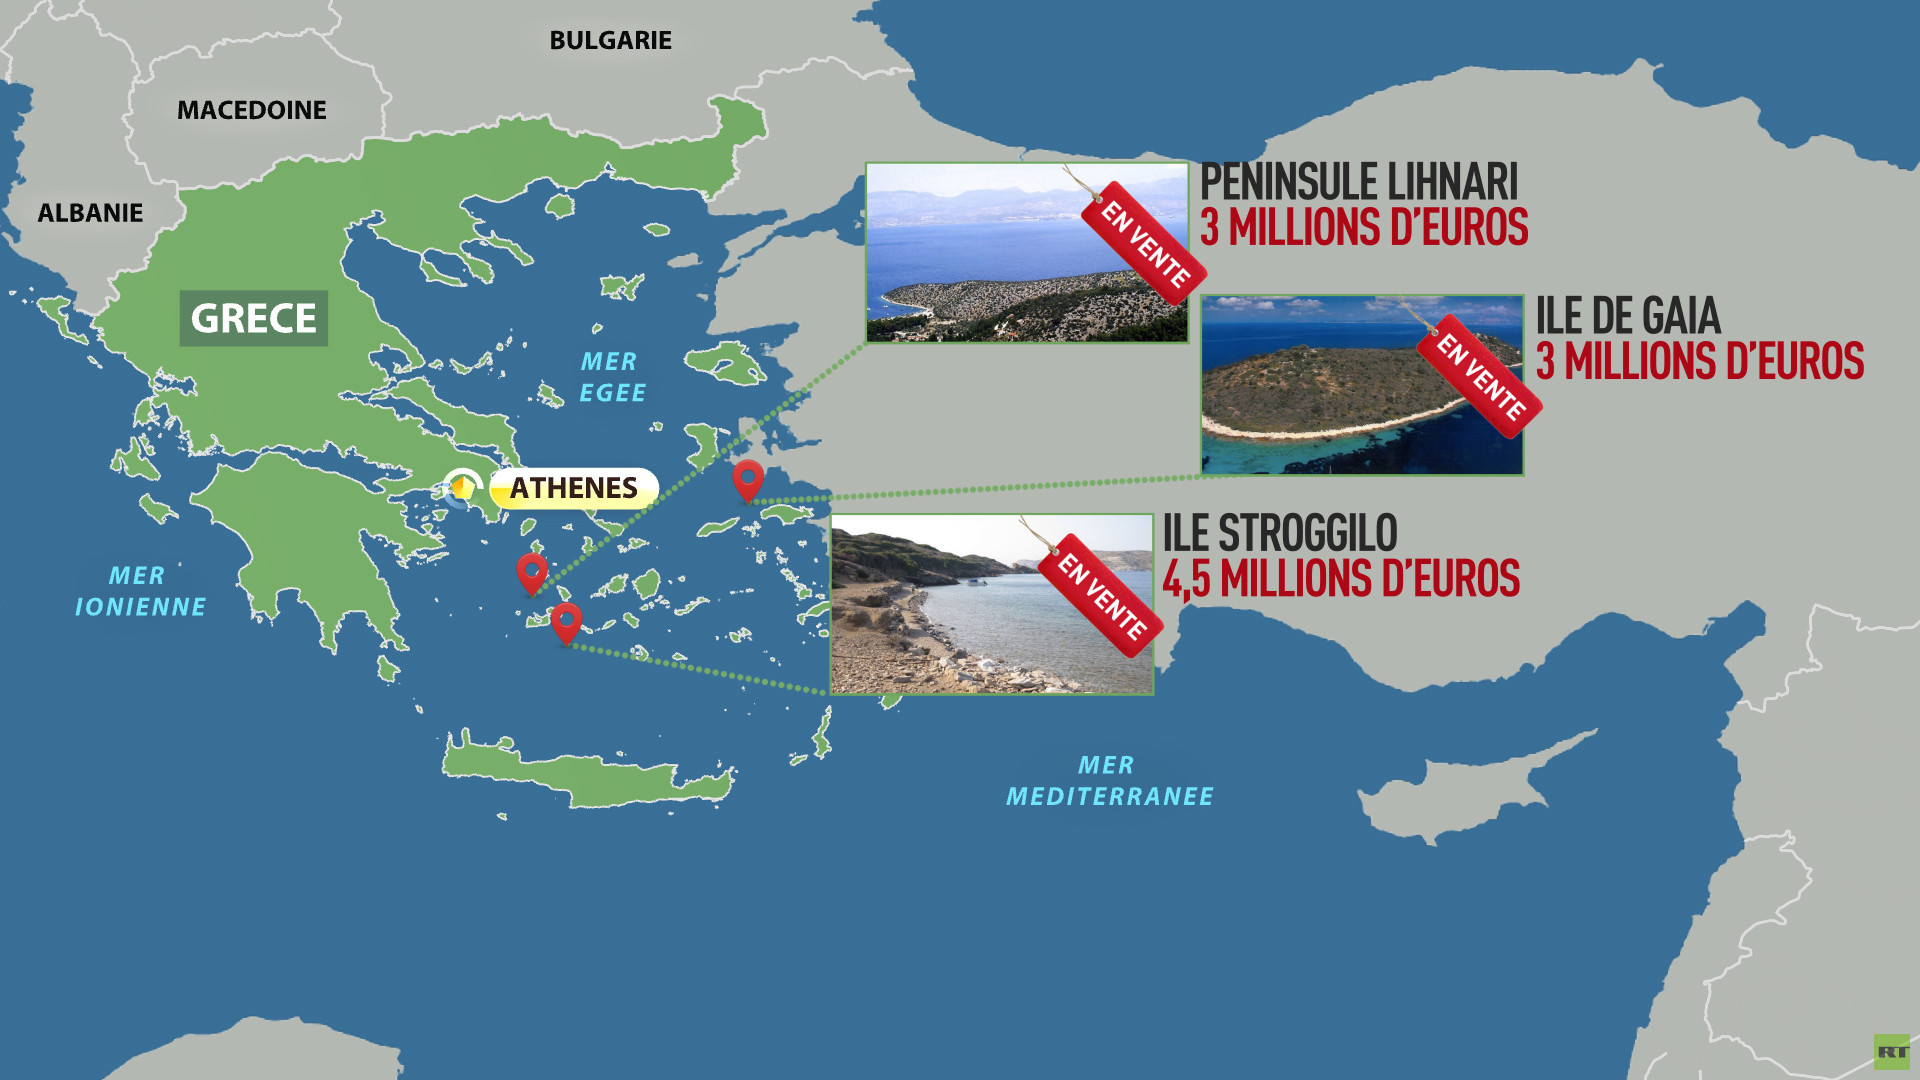 Des mesures désespérées : la Grèce vend ses îles précieuses